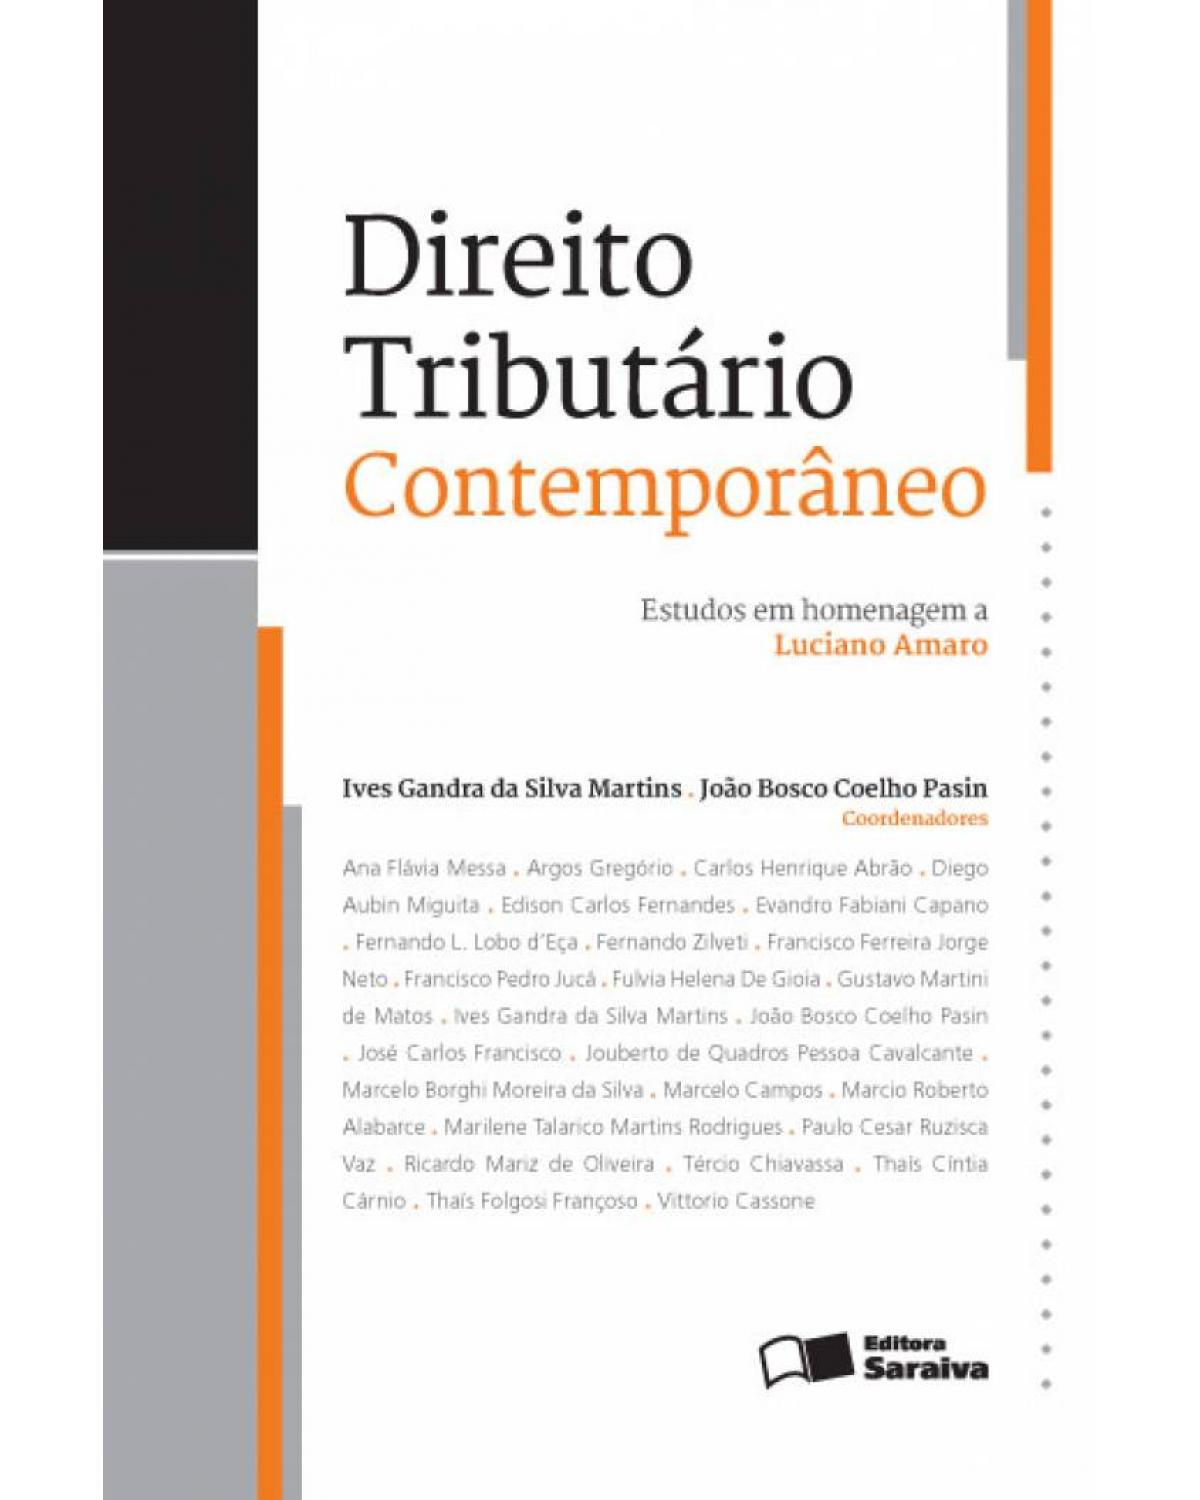 Direito tributário contemporâneo - estudos em homenagem a Luciano Amaro - 1ª Edição | 2013